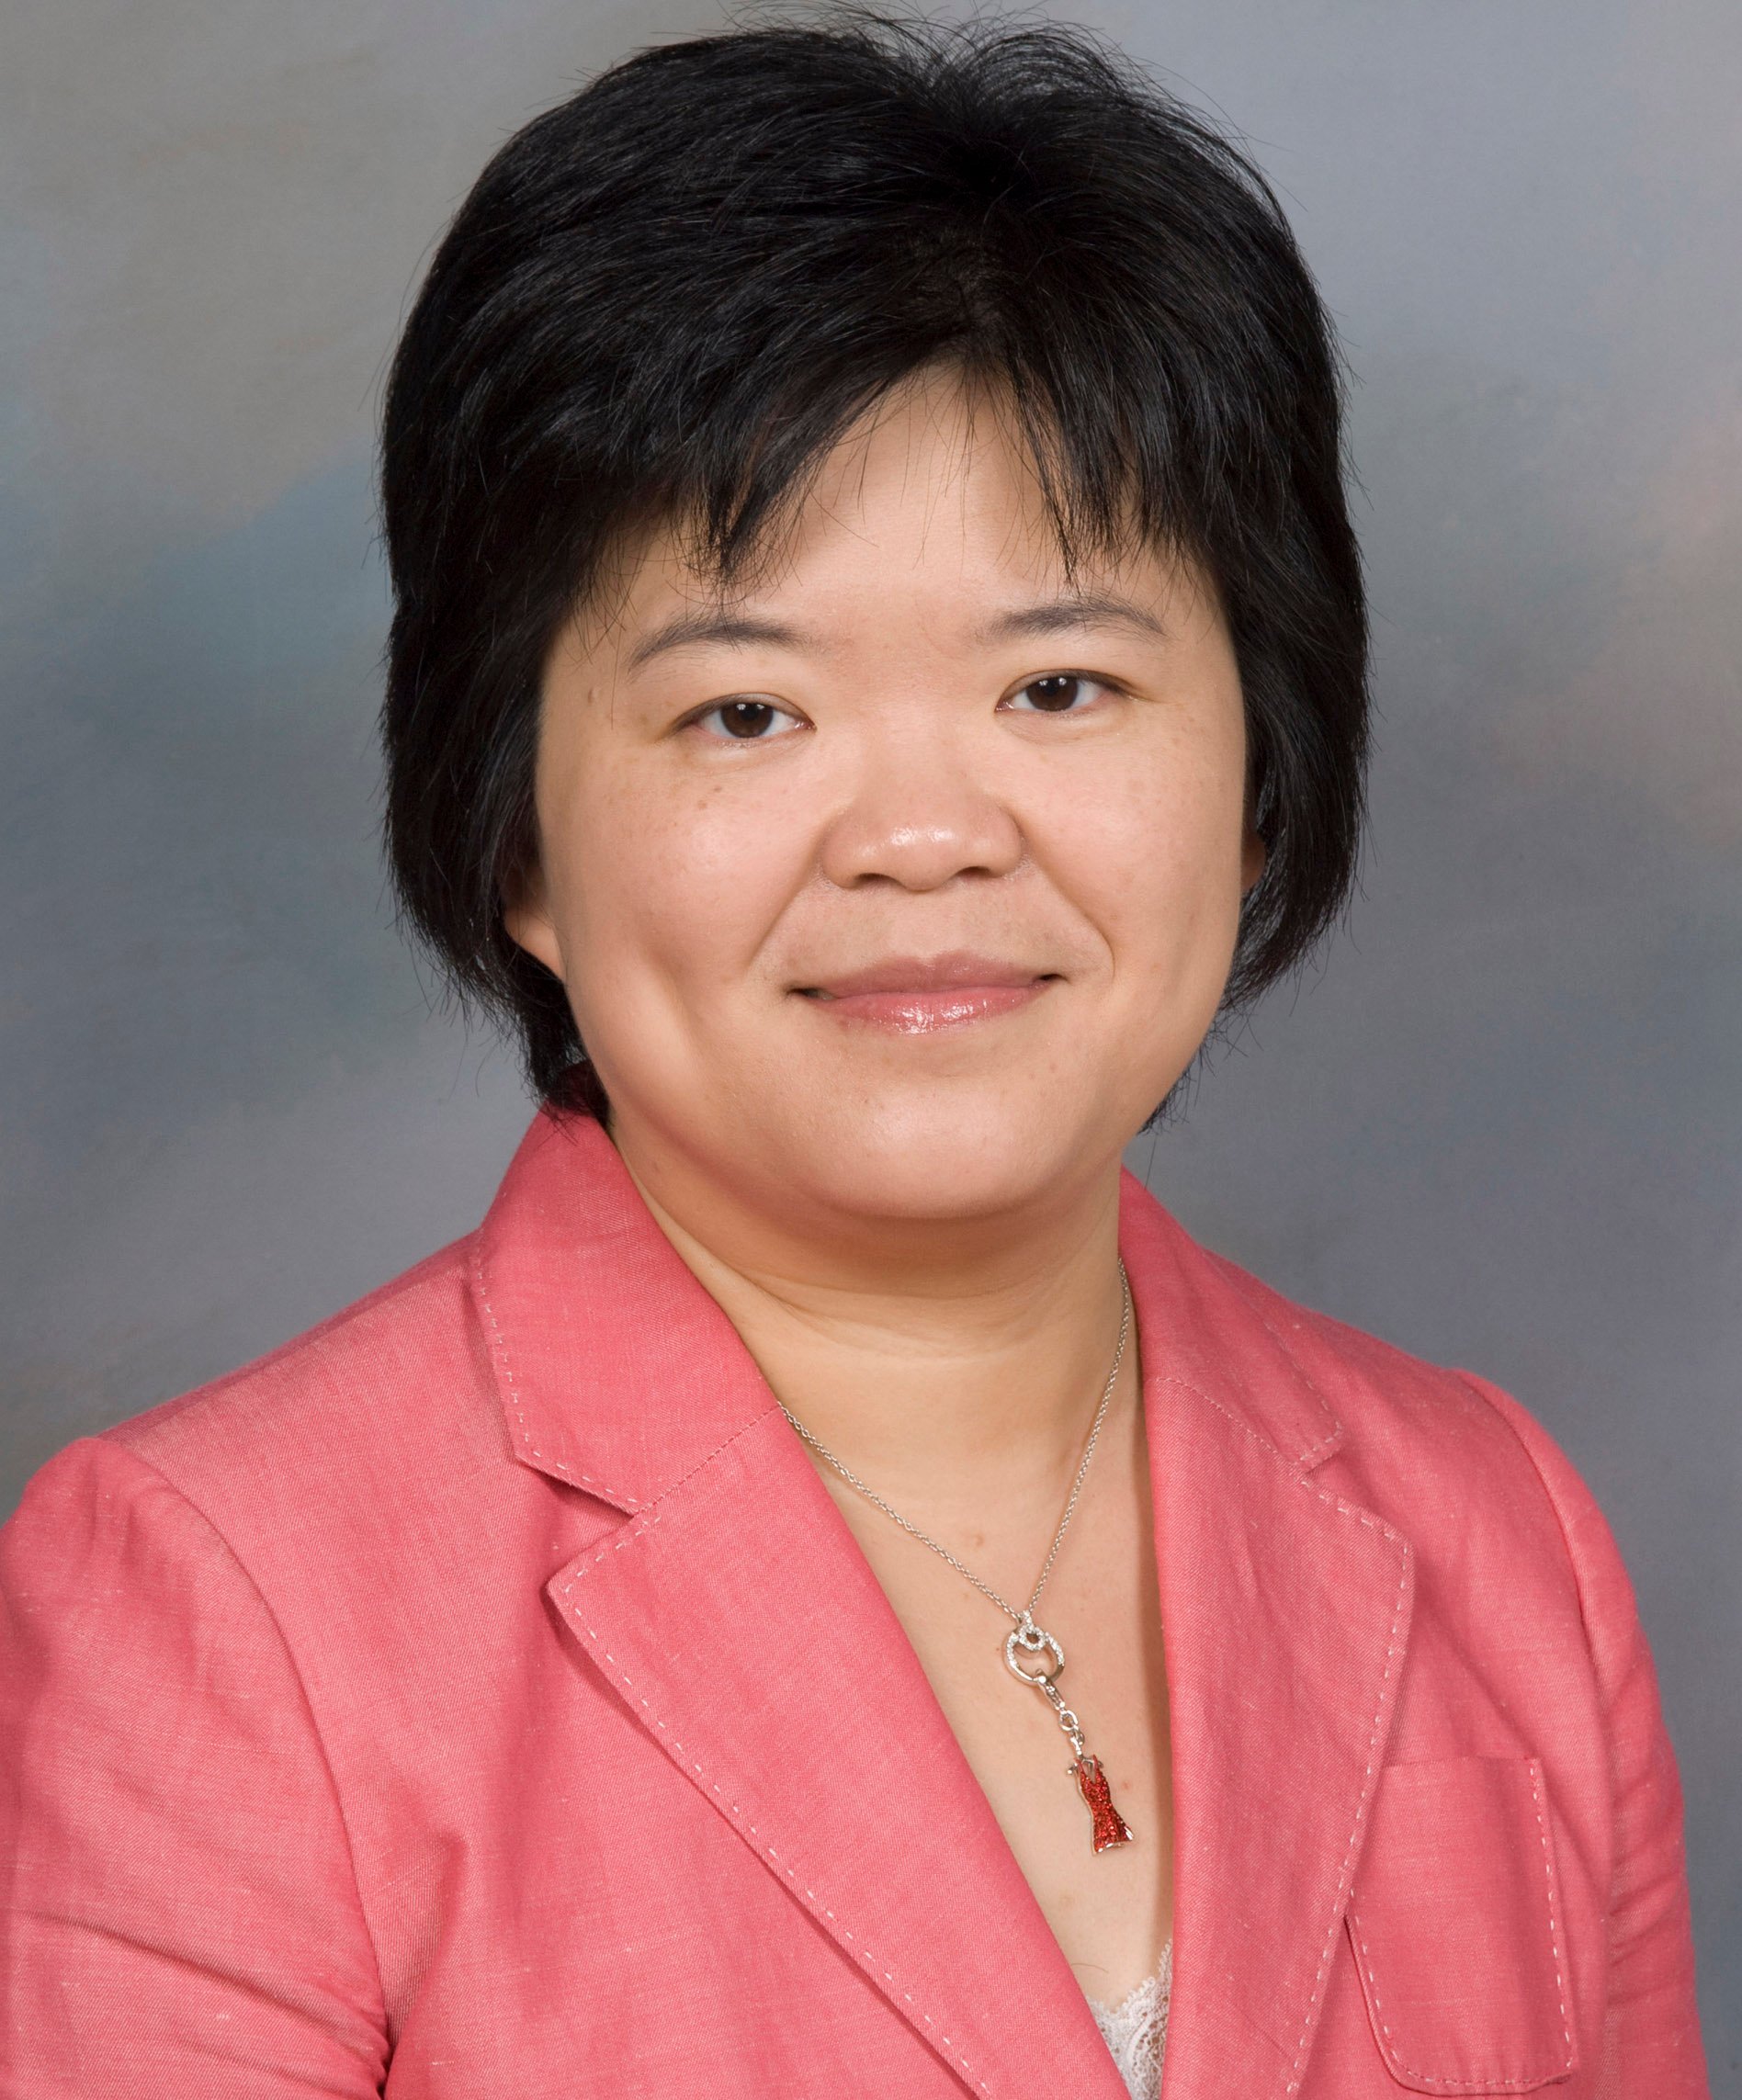 Dr. Erica Yu